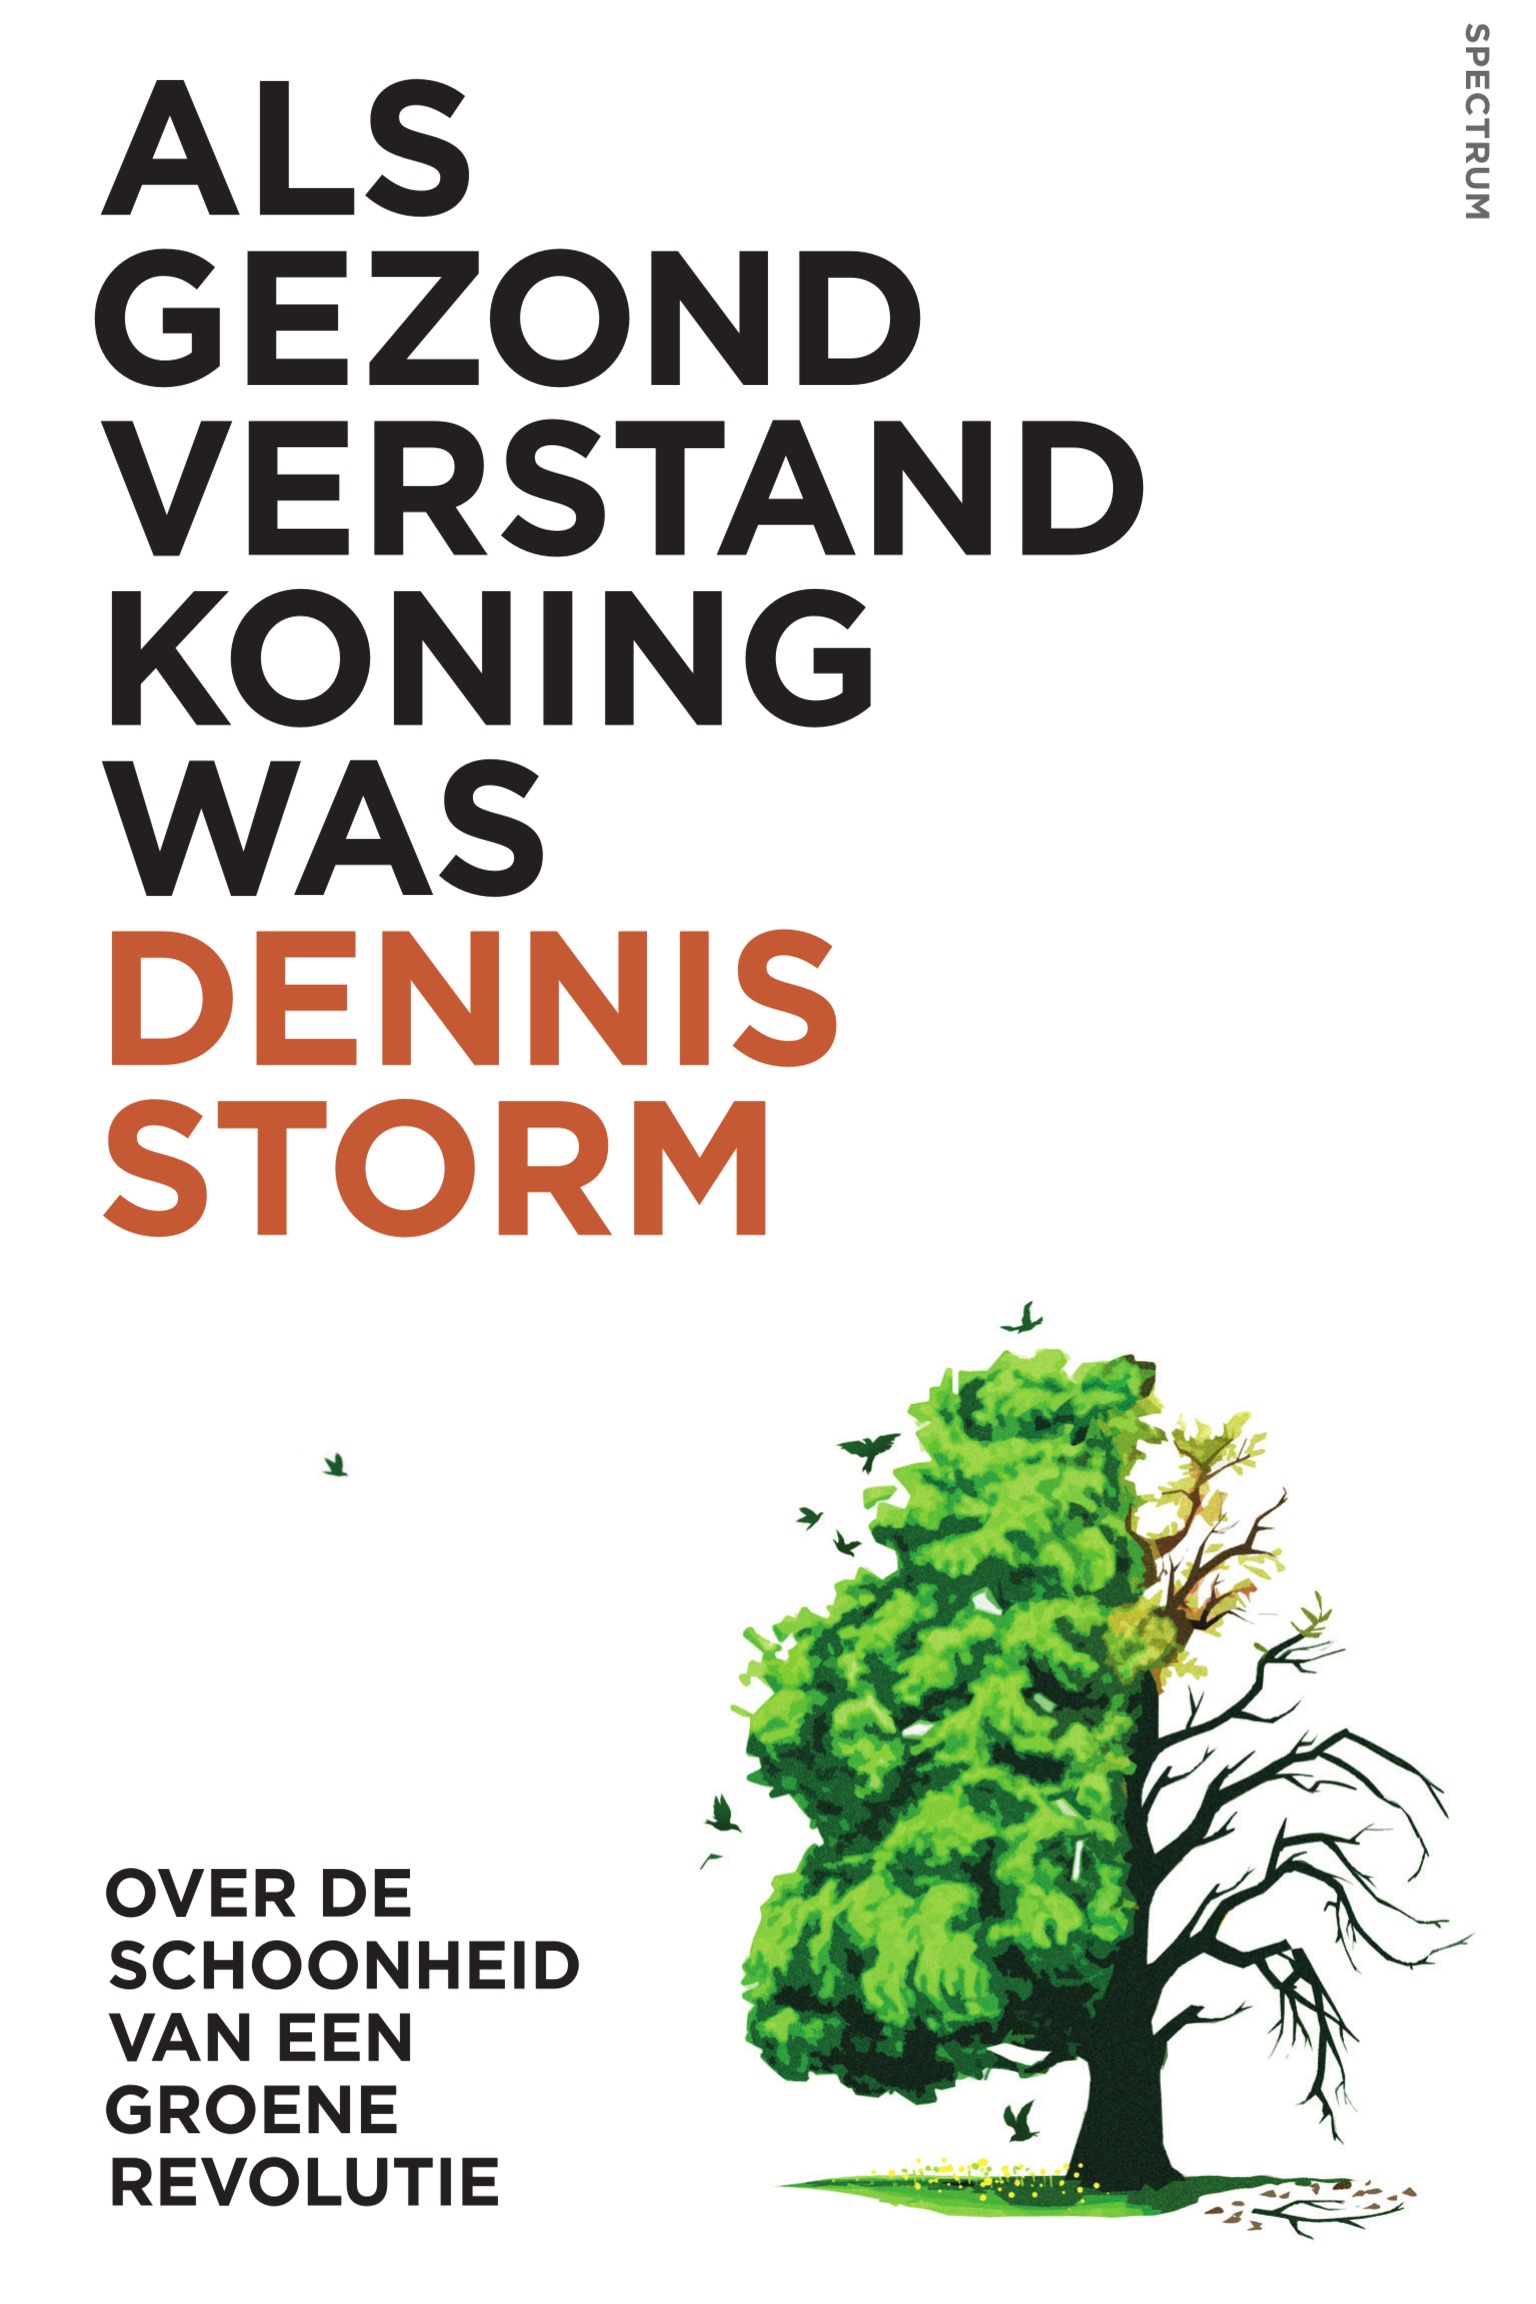 Dennis storm